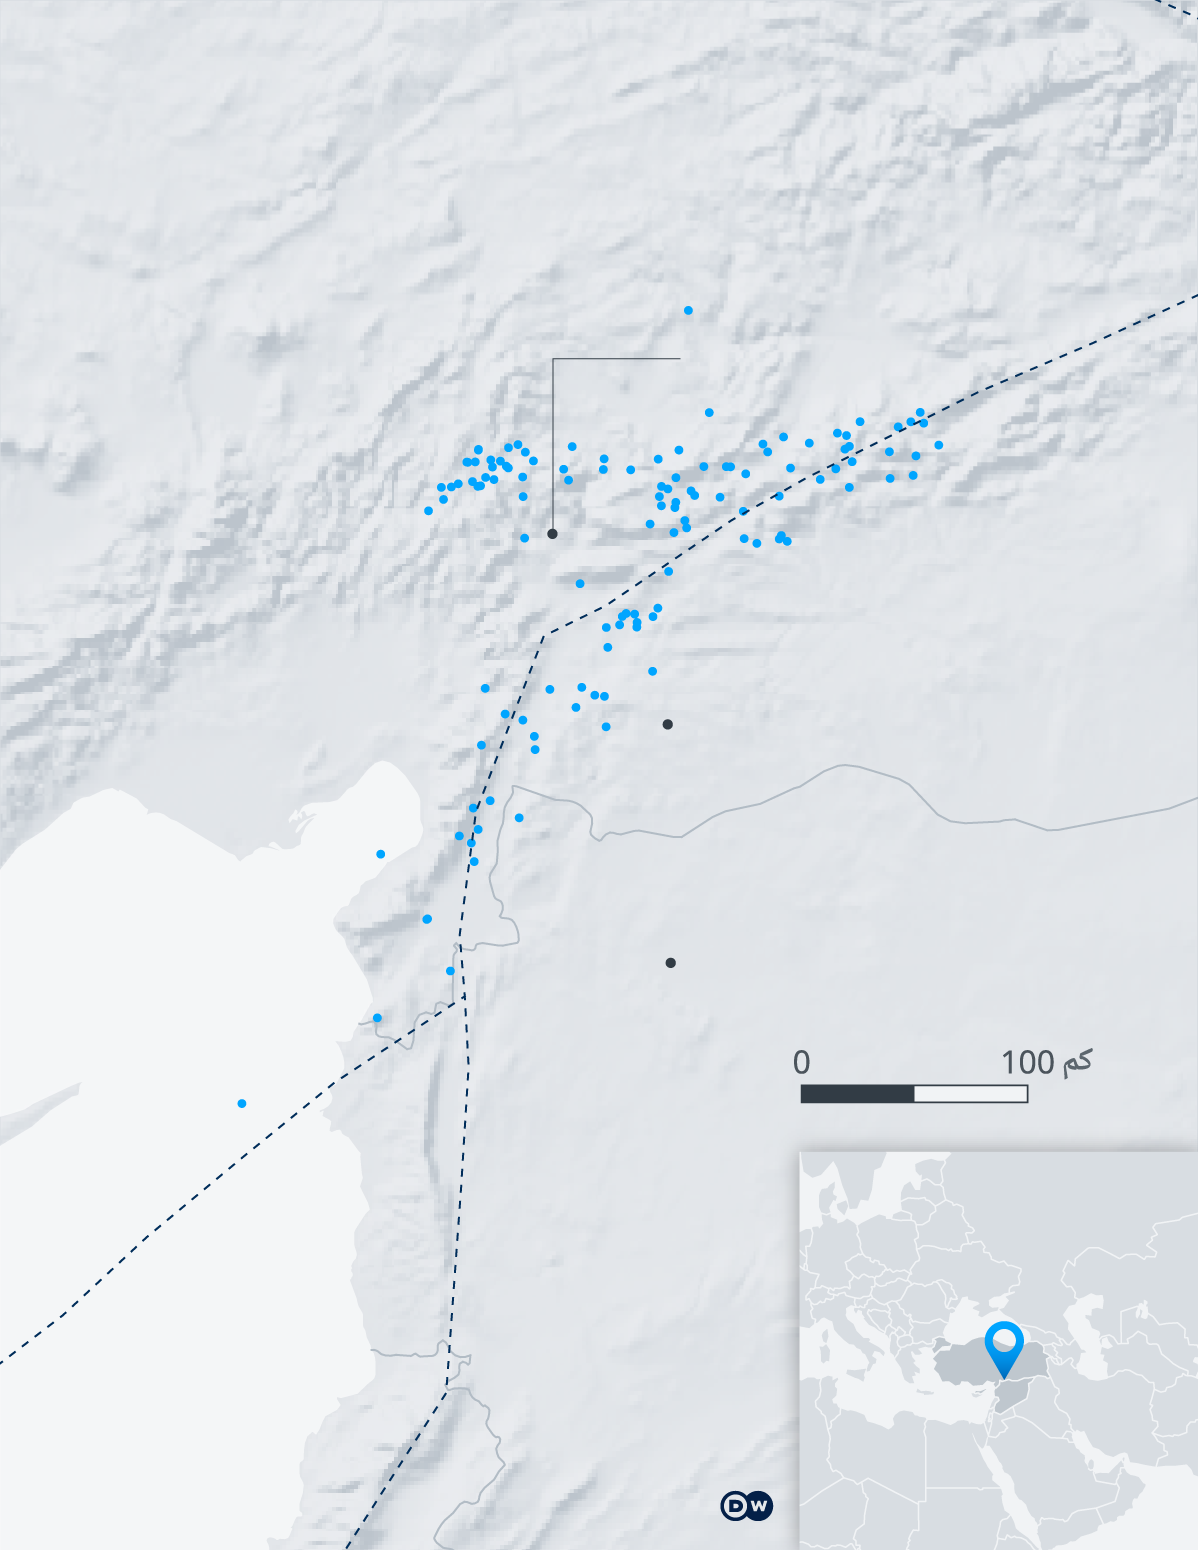 خريطة تظهر المناطق التي ضربها الزلزال في سوريا وتركيا. تجاوز عدد قتلى زلزال تركيا وسوريا عشرين ألفا بعد أربعة أيام من وقوعه.